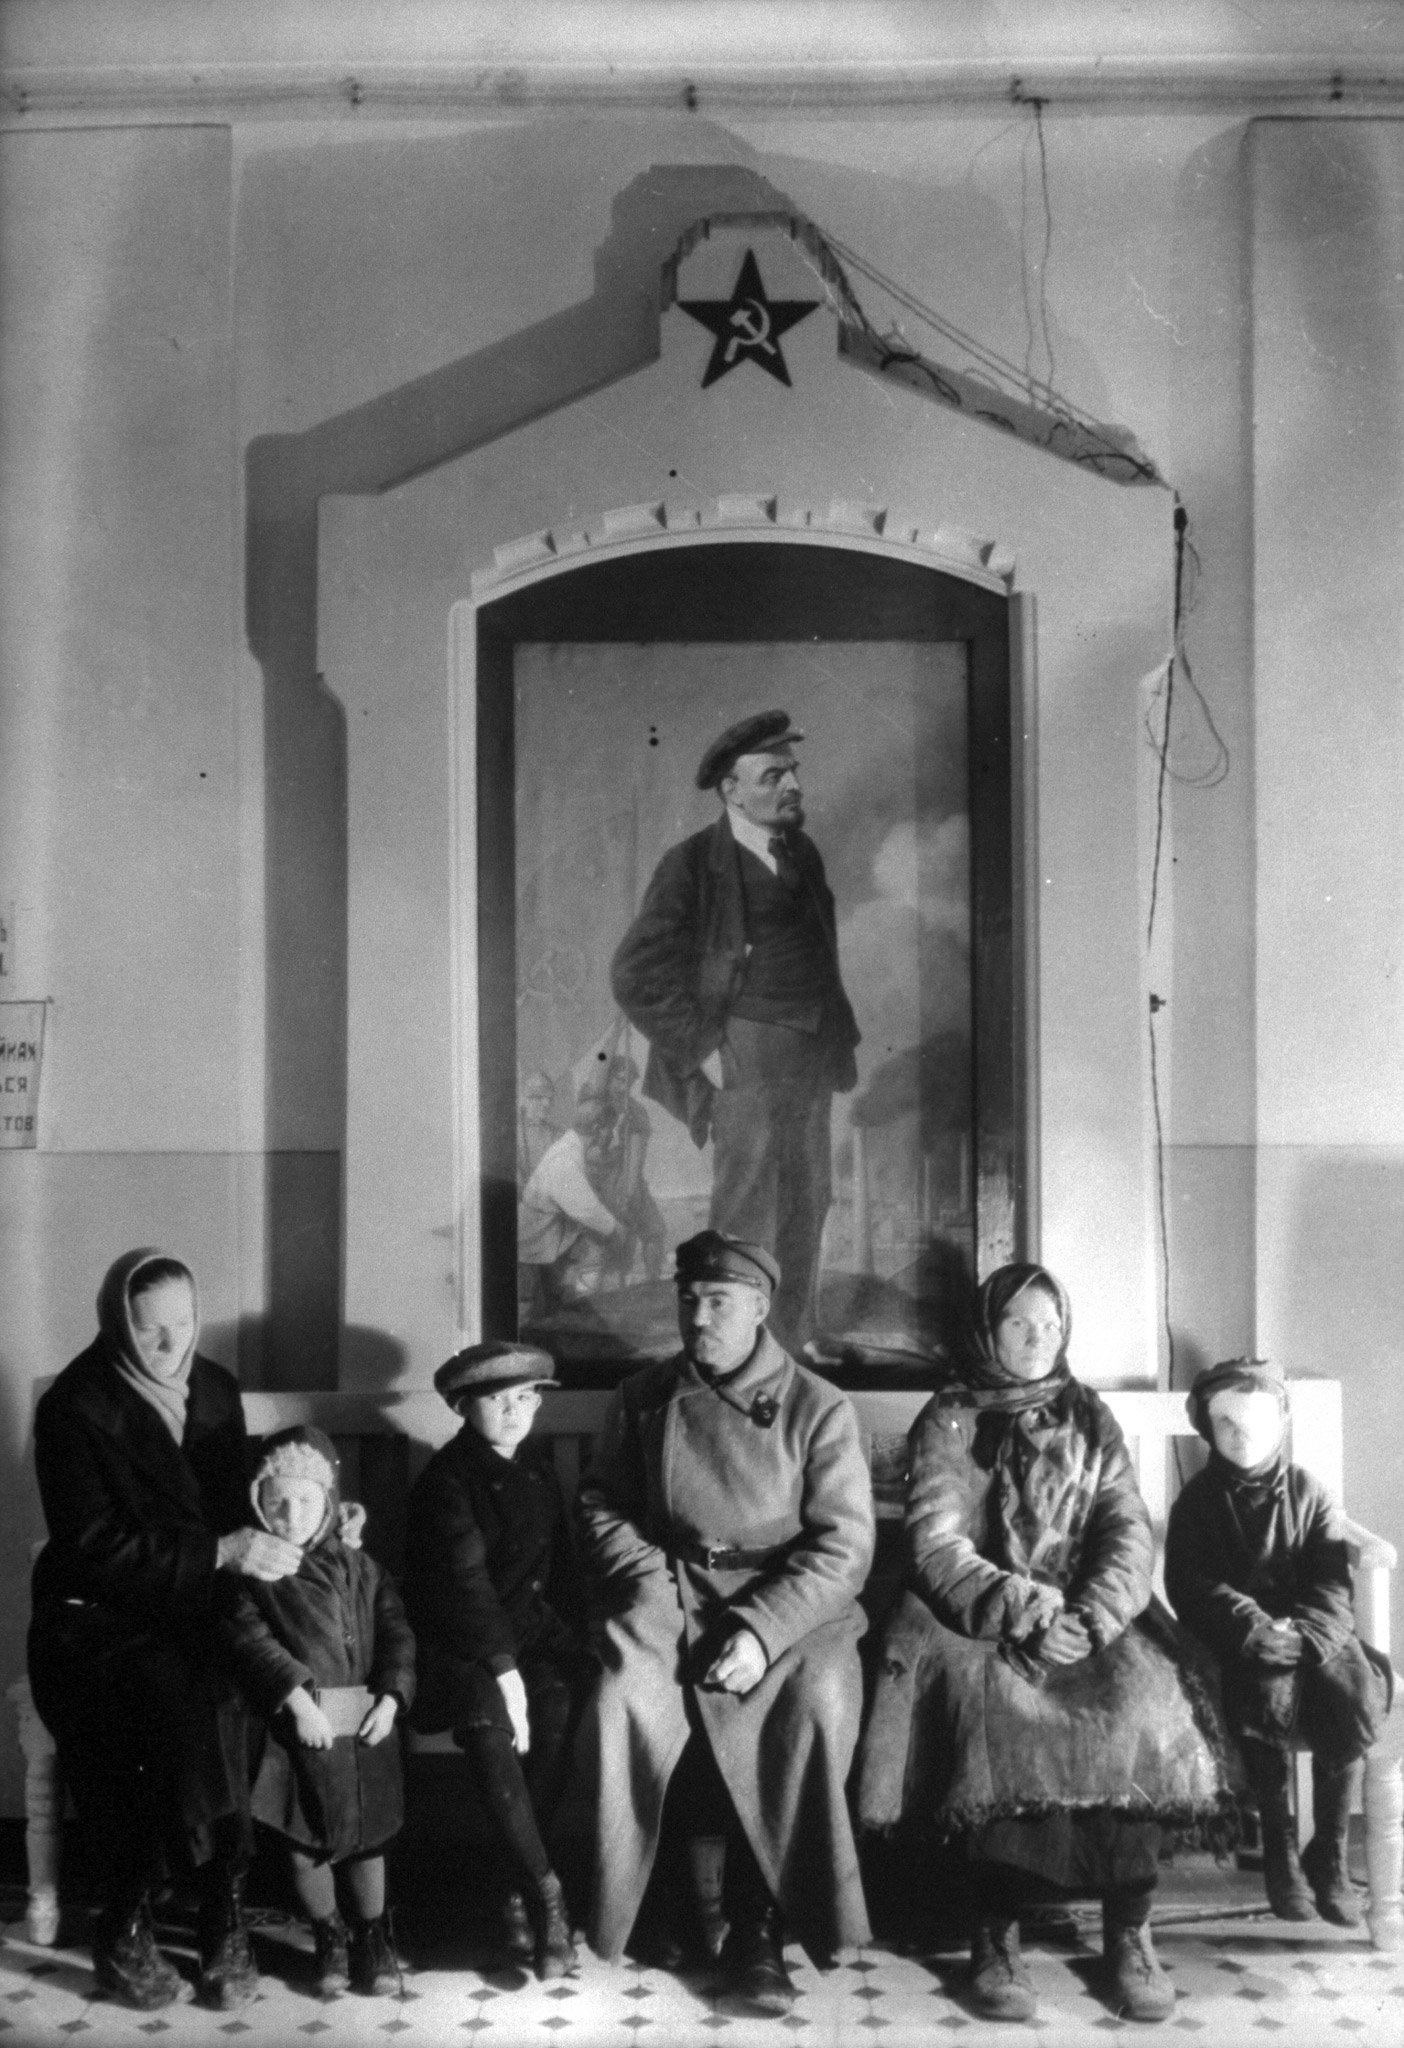 Margaret Bourke-White 1931 Fortune magazine photo essay in Russia